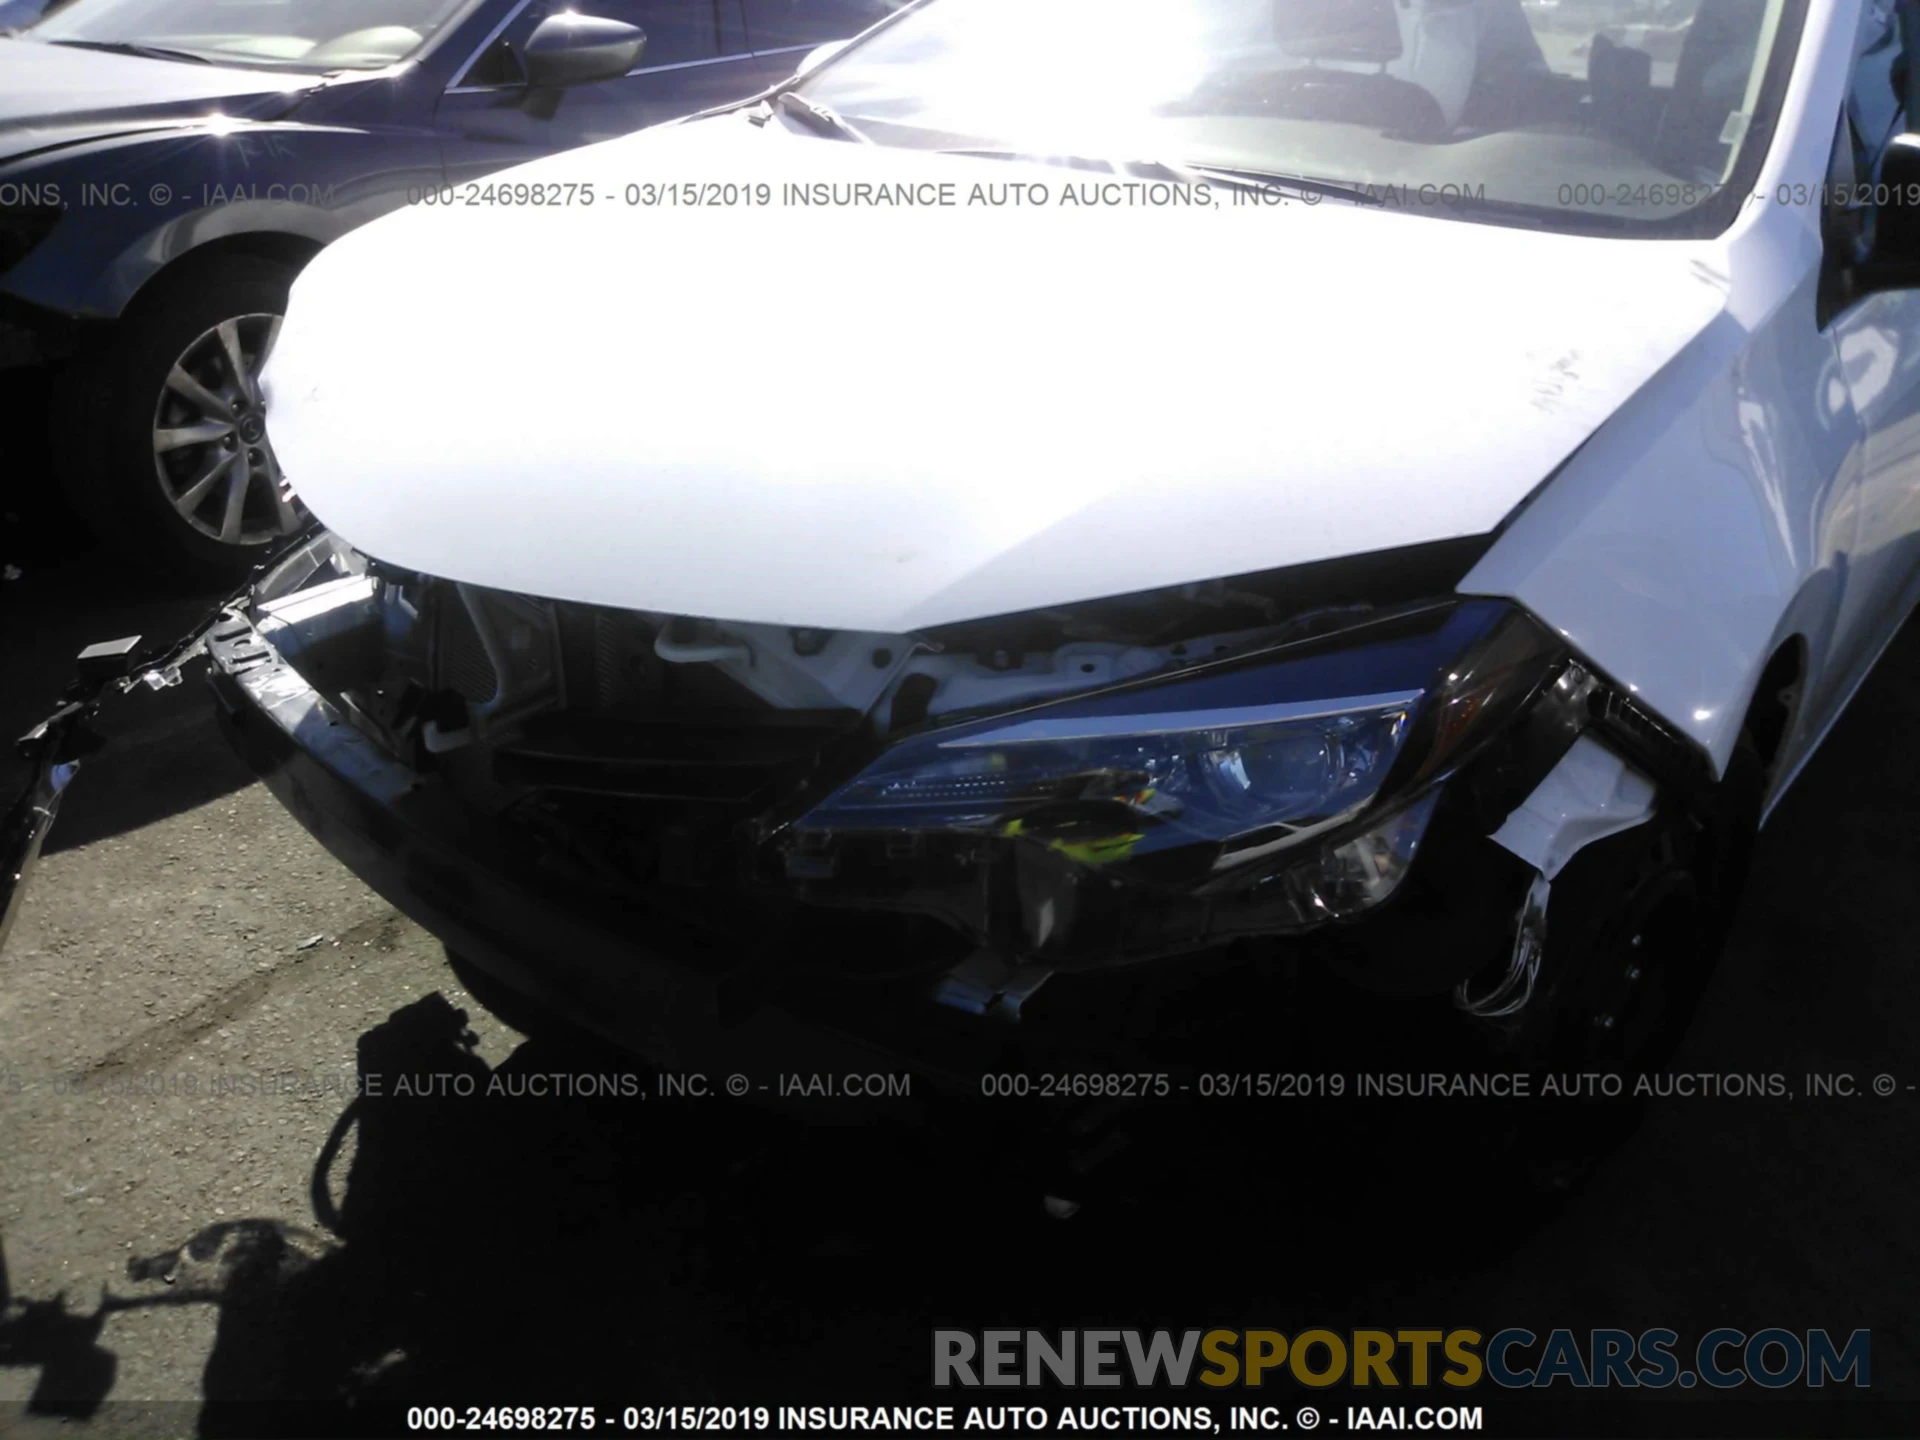 6 Photograph of a damaged car 5YFBURHE7KP866577 TOYOTA COROLLA 2019